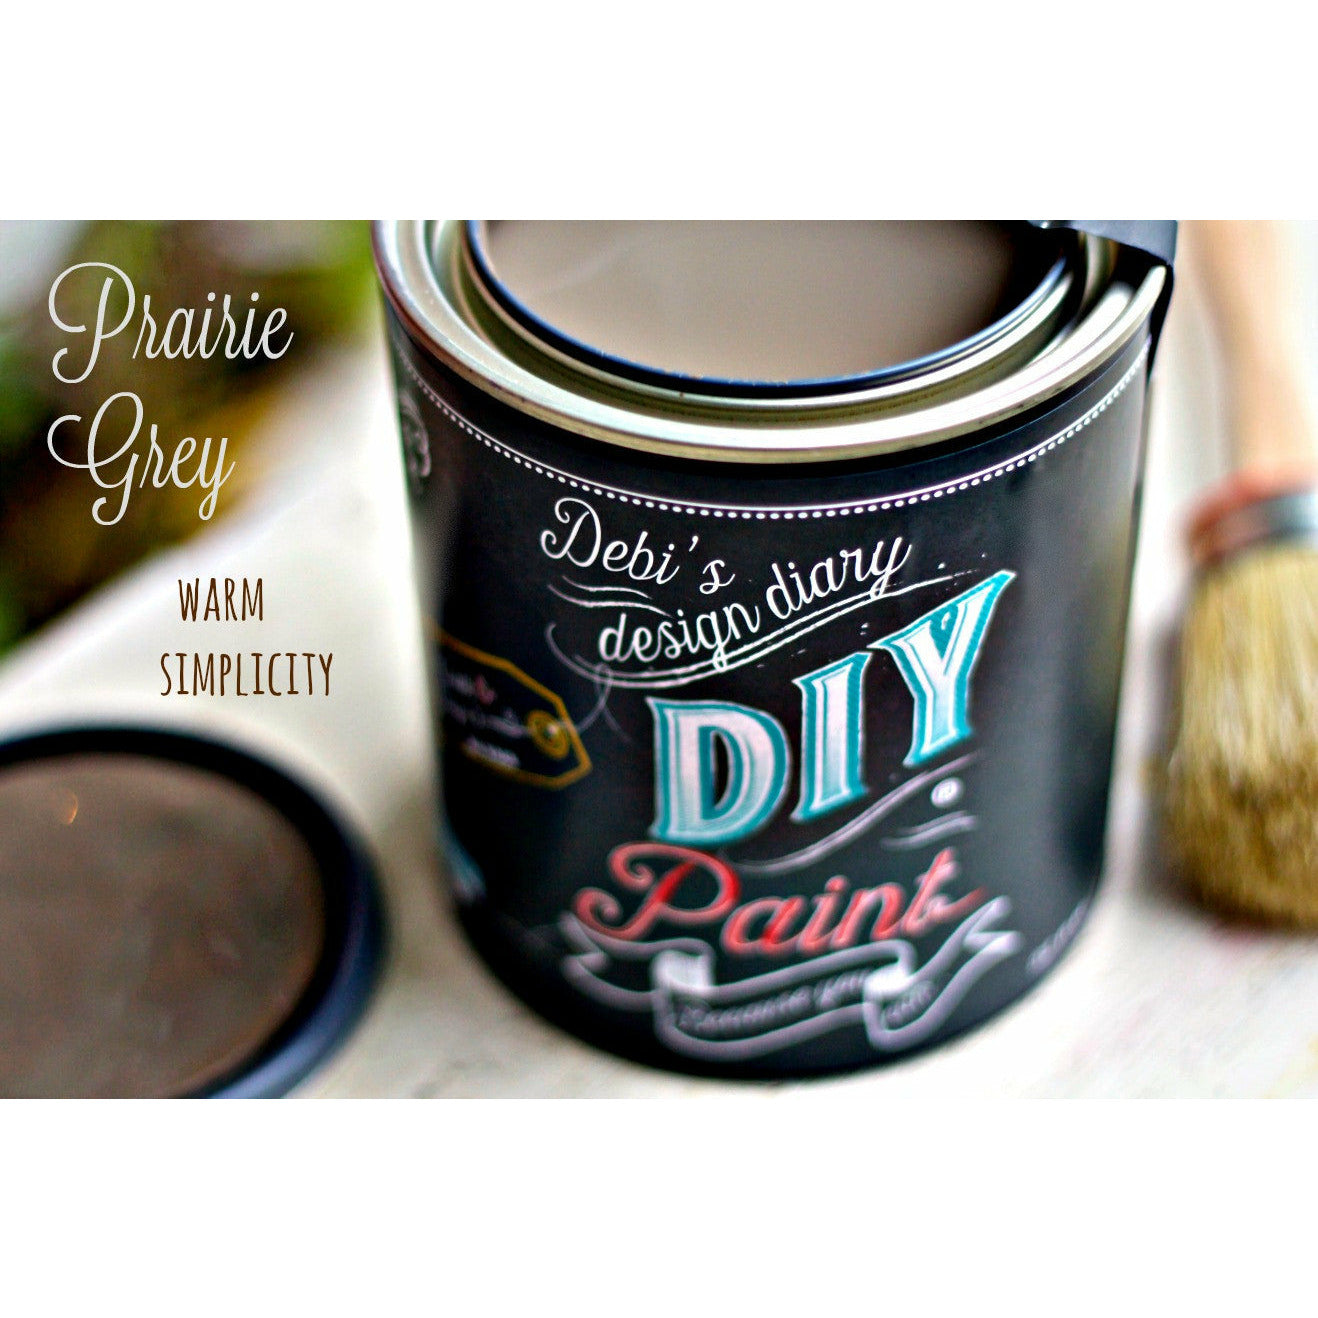 Prairie Grey DIY Paint